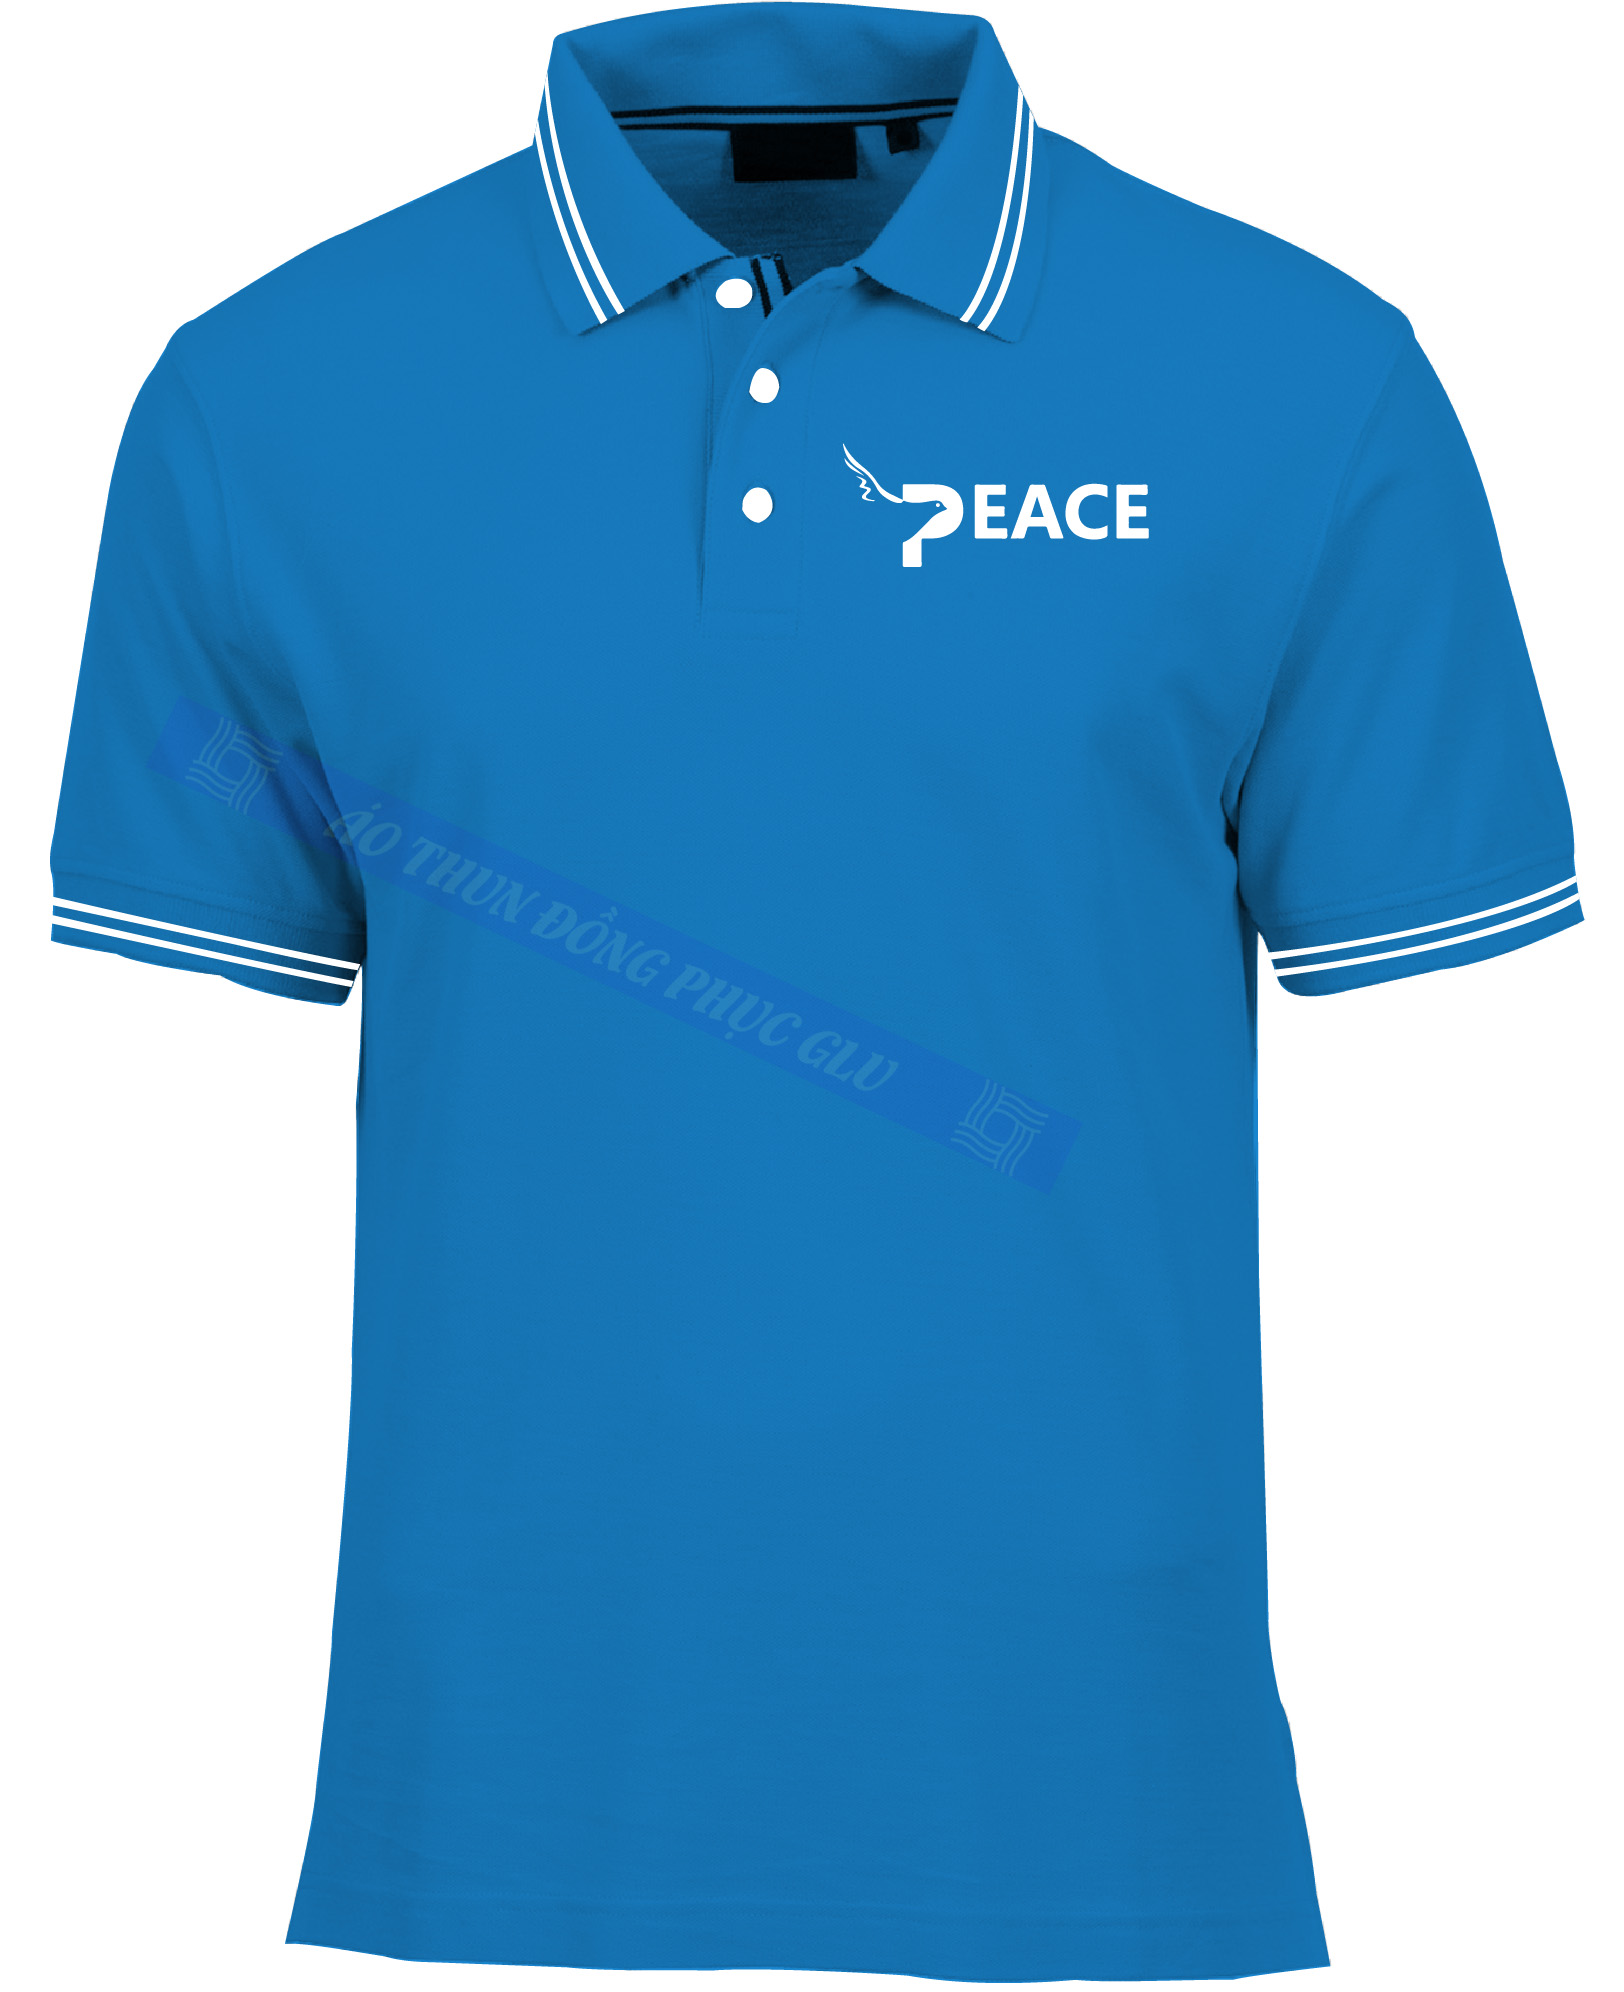 AO THUN PEACE SCHOOL AT201 áo thun đồng phục công sở